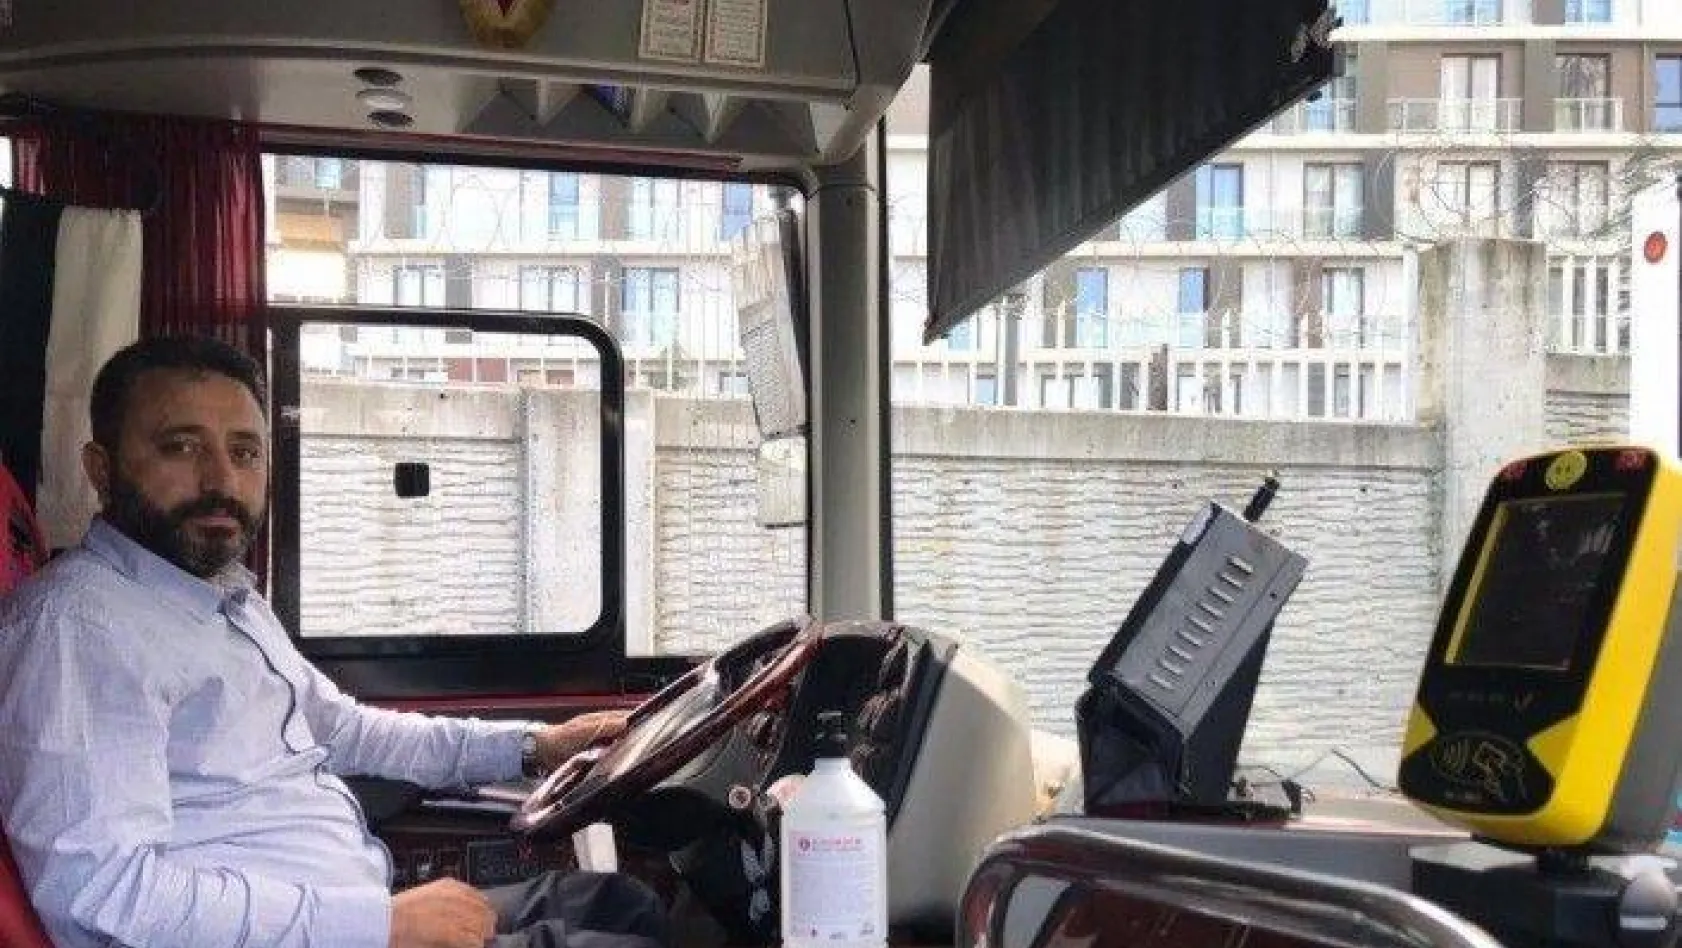 İstanbul'da Özel Halk Otobüsleri sağlık çalışanlarına bedava